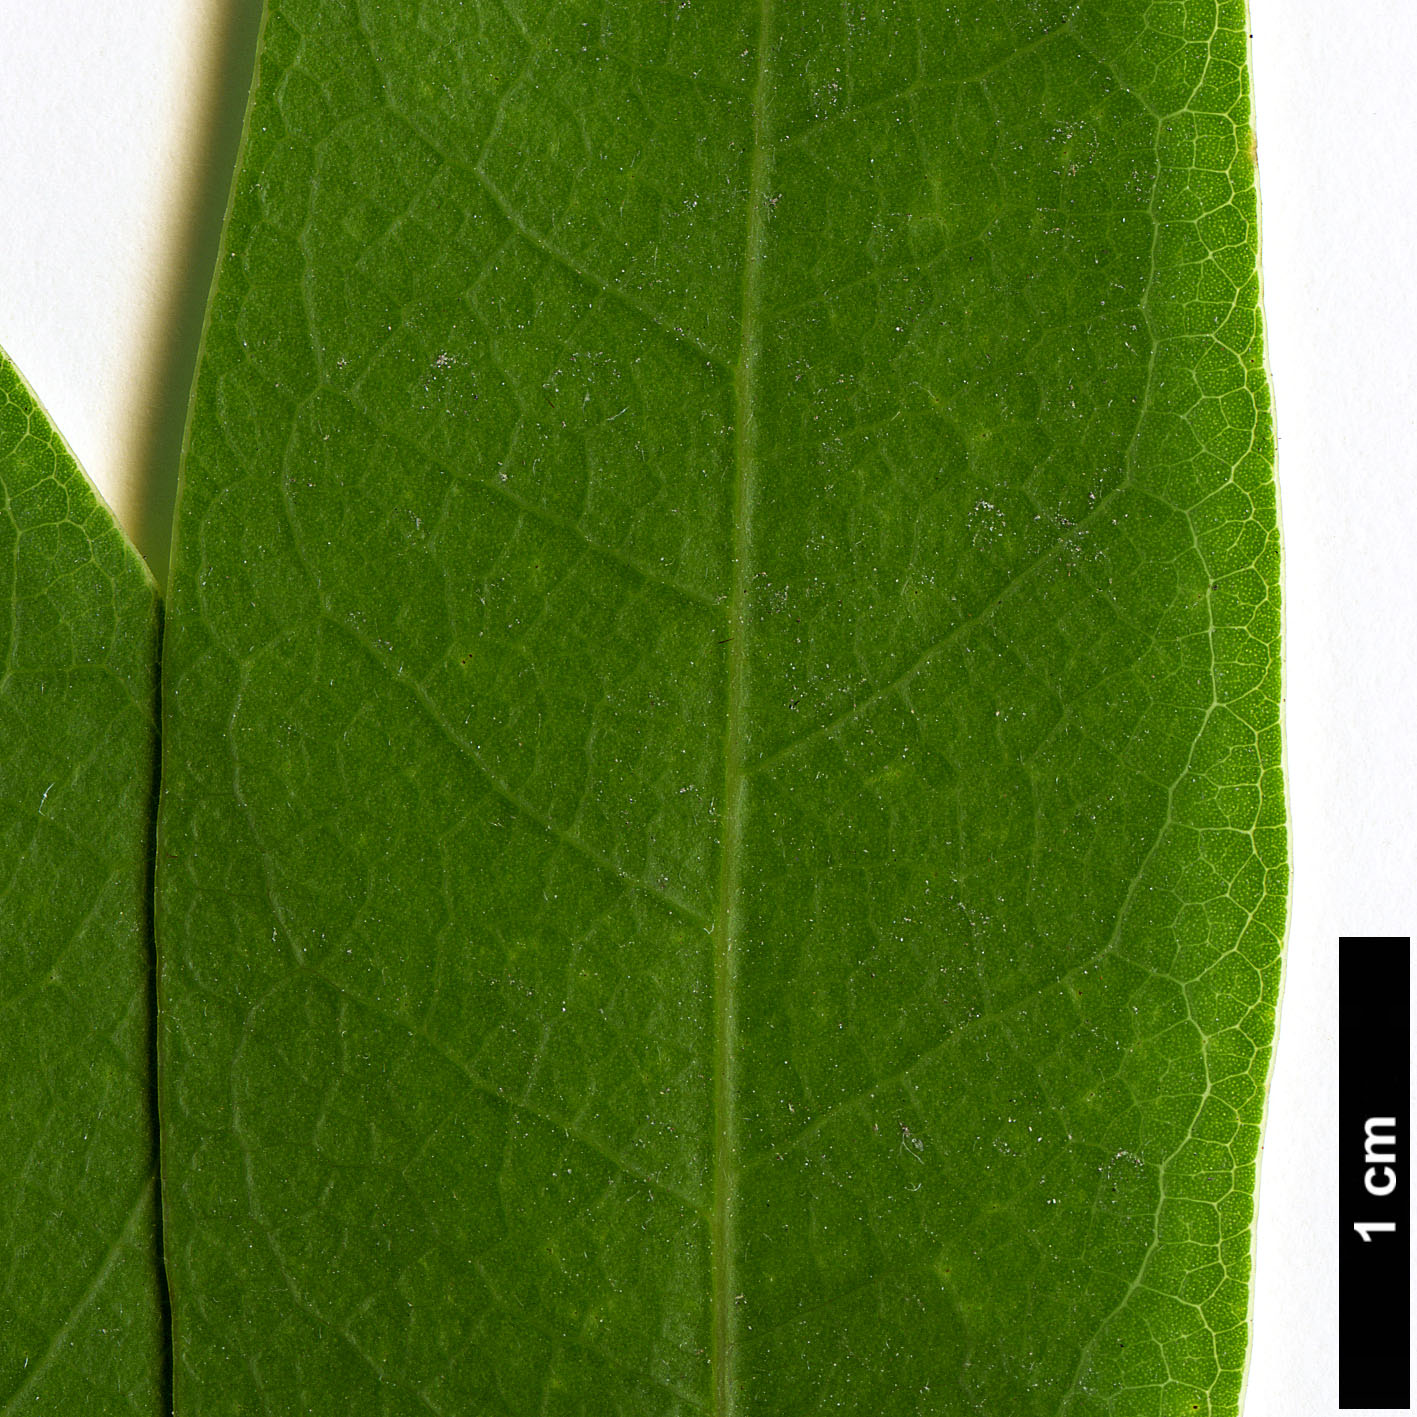 High resolution image: Family: Lauraceae - Genus: Umbellularia - Taxon: californica